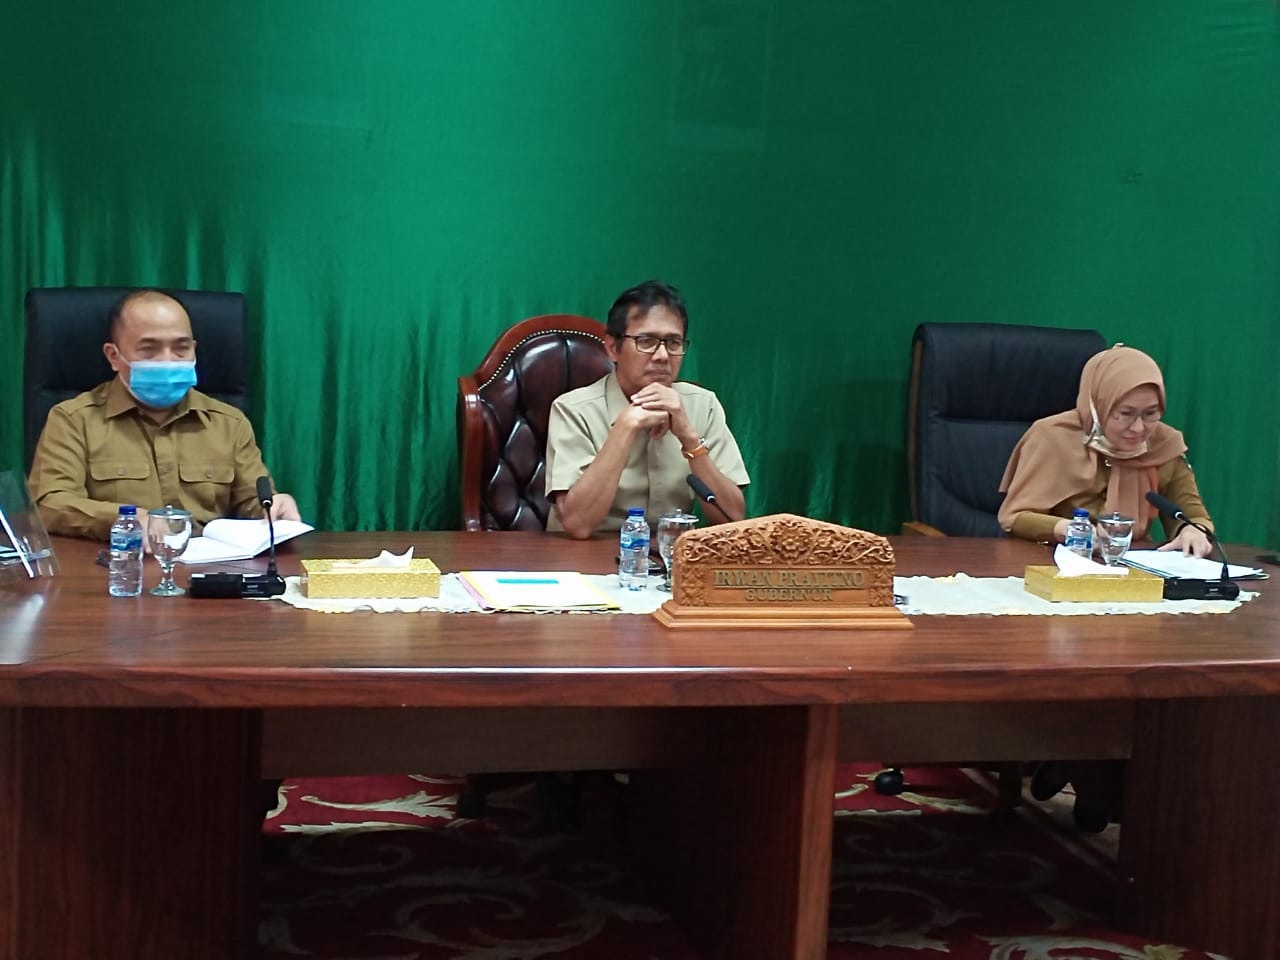 Gubernur Sumbar, Irwan Prayitno dan jajaran pemprov mengadakan FGD membahas kondisi 5 danau di Sumbar, di ruang kerjanya, Selasa (21/7/2020).